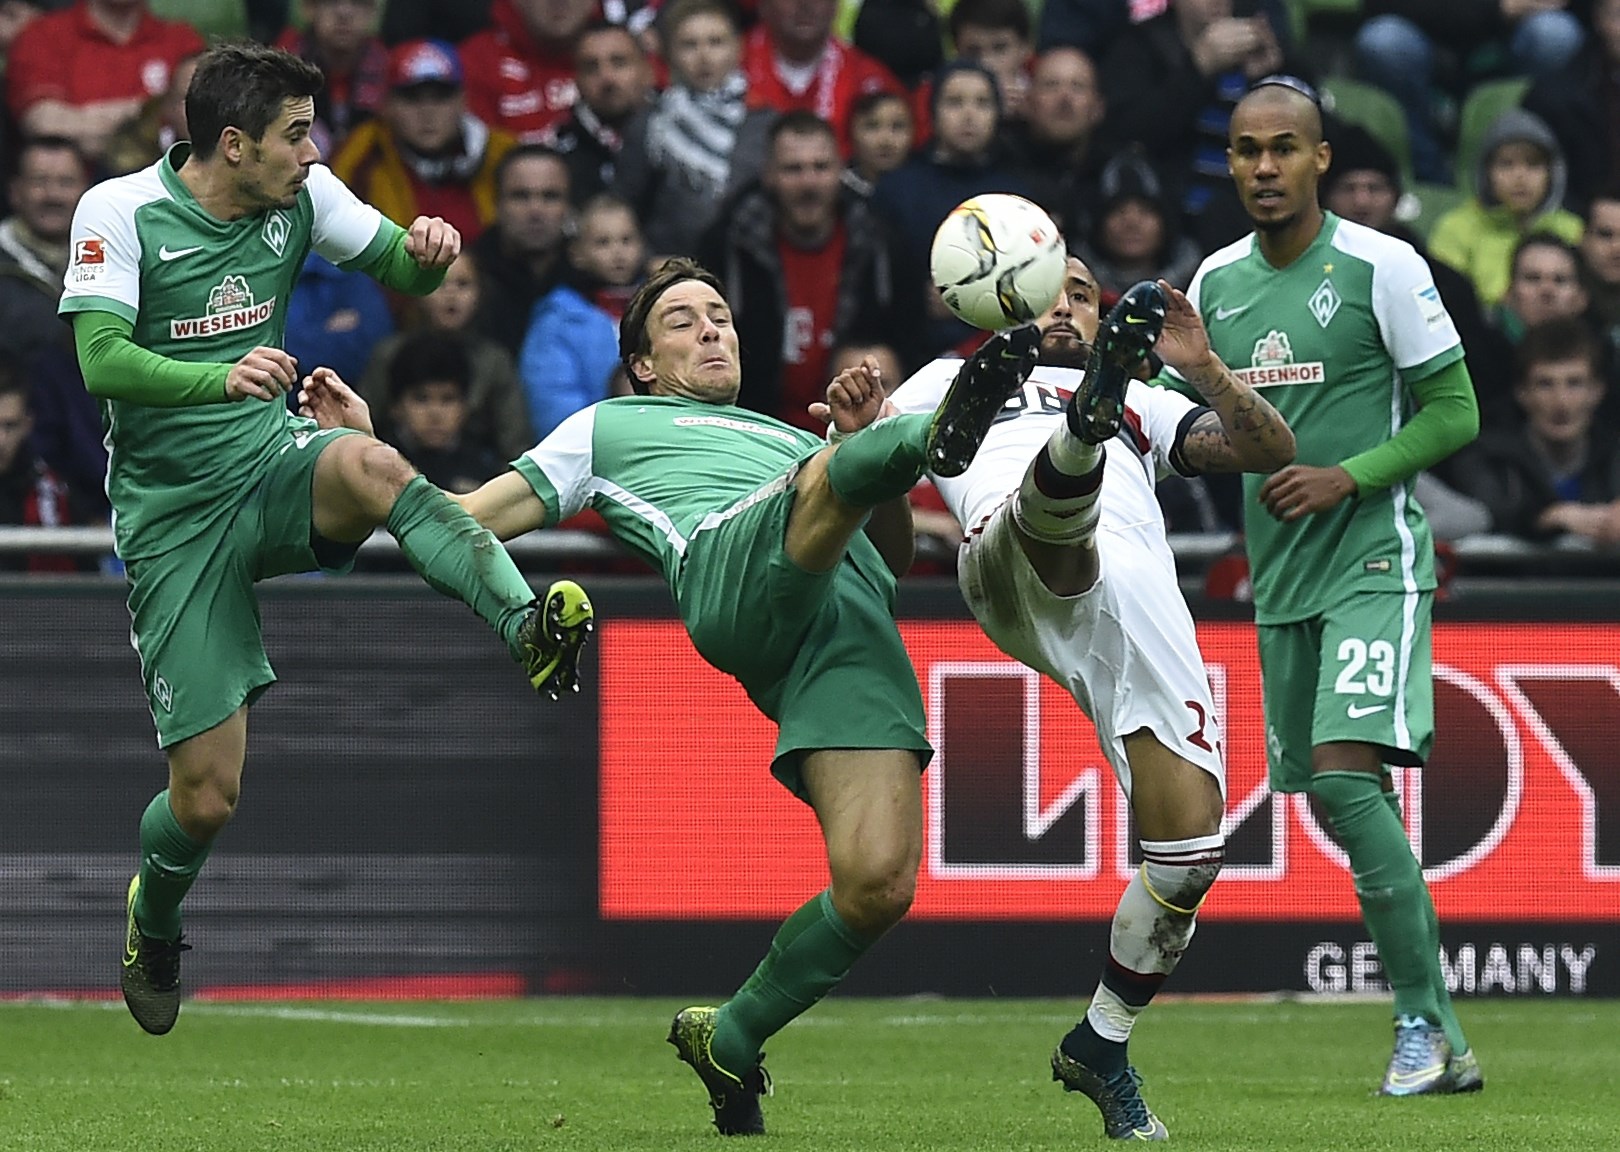 Bereits im Hinspiel haben sich Arturo Vidal und der FC Bayern schwer getan. (Bild: Tobias Schwarz / AFP / Getty Images)